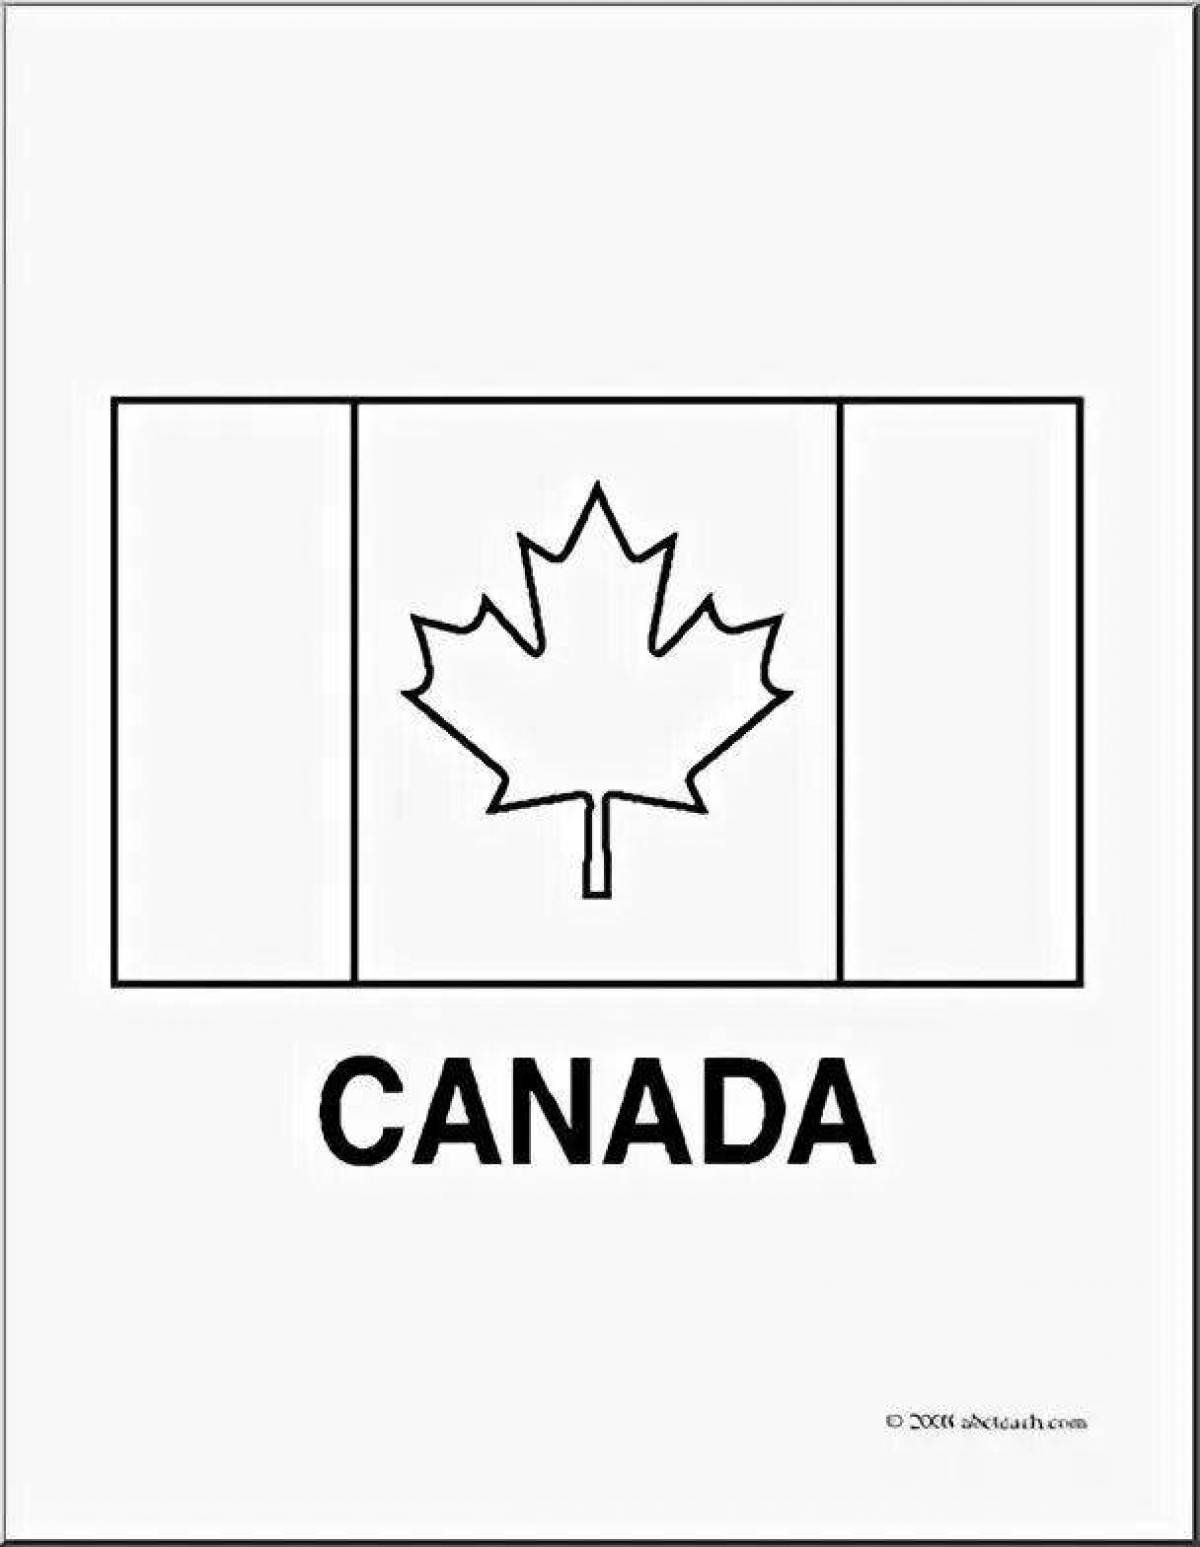 Canada Flag | Canada wallpaper hd, Canada flag, Flag